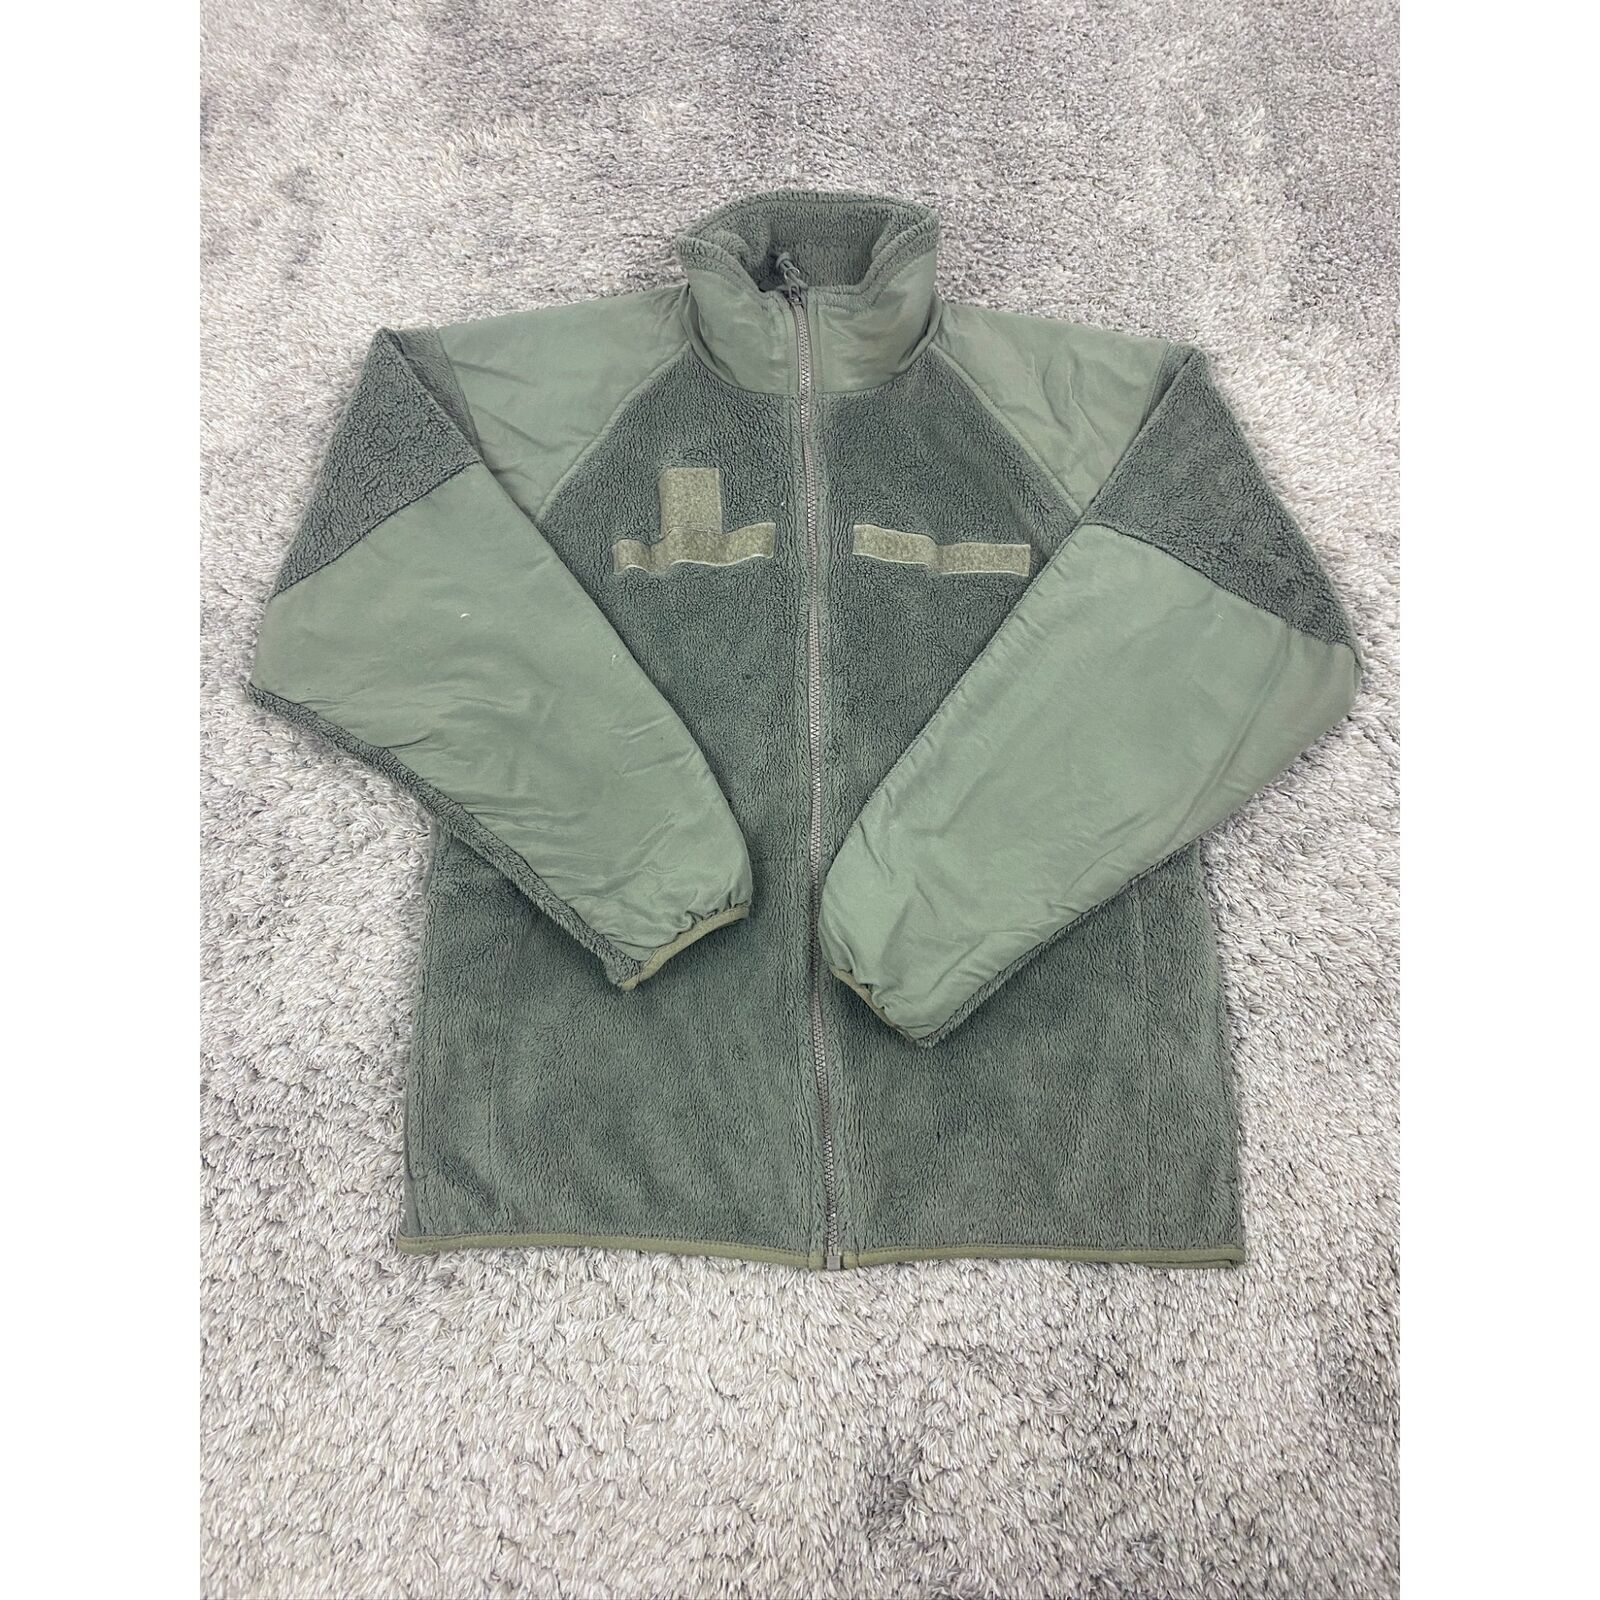 USGI Cold Weather Jacket Mens Medium Gen III Polartec Full Zip Green Fleece Coat